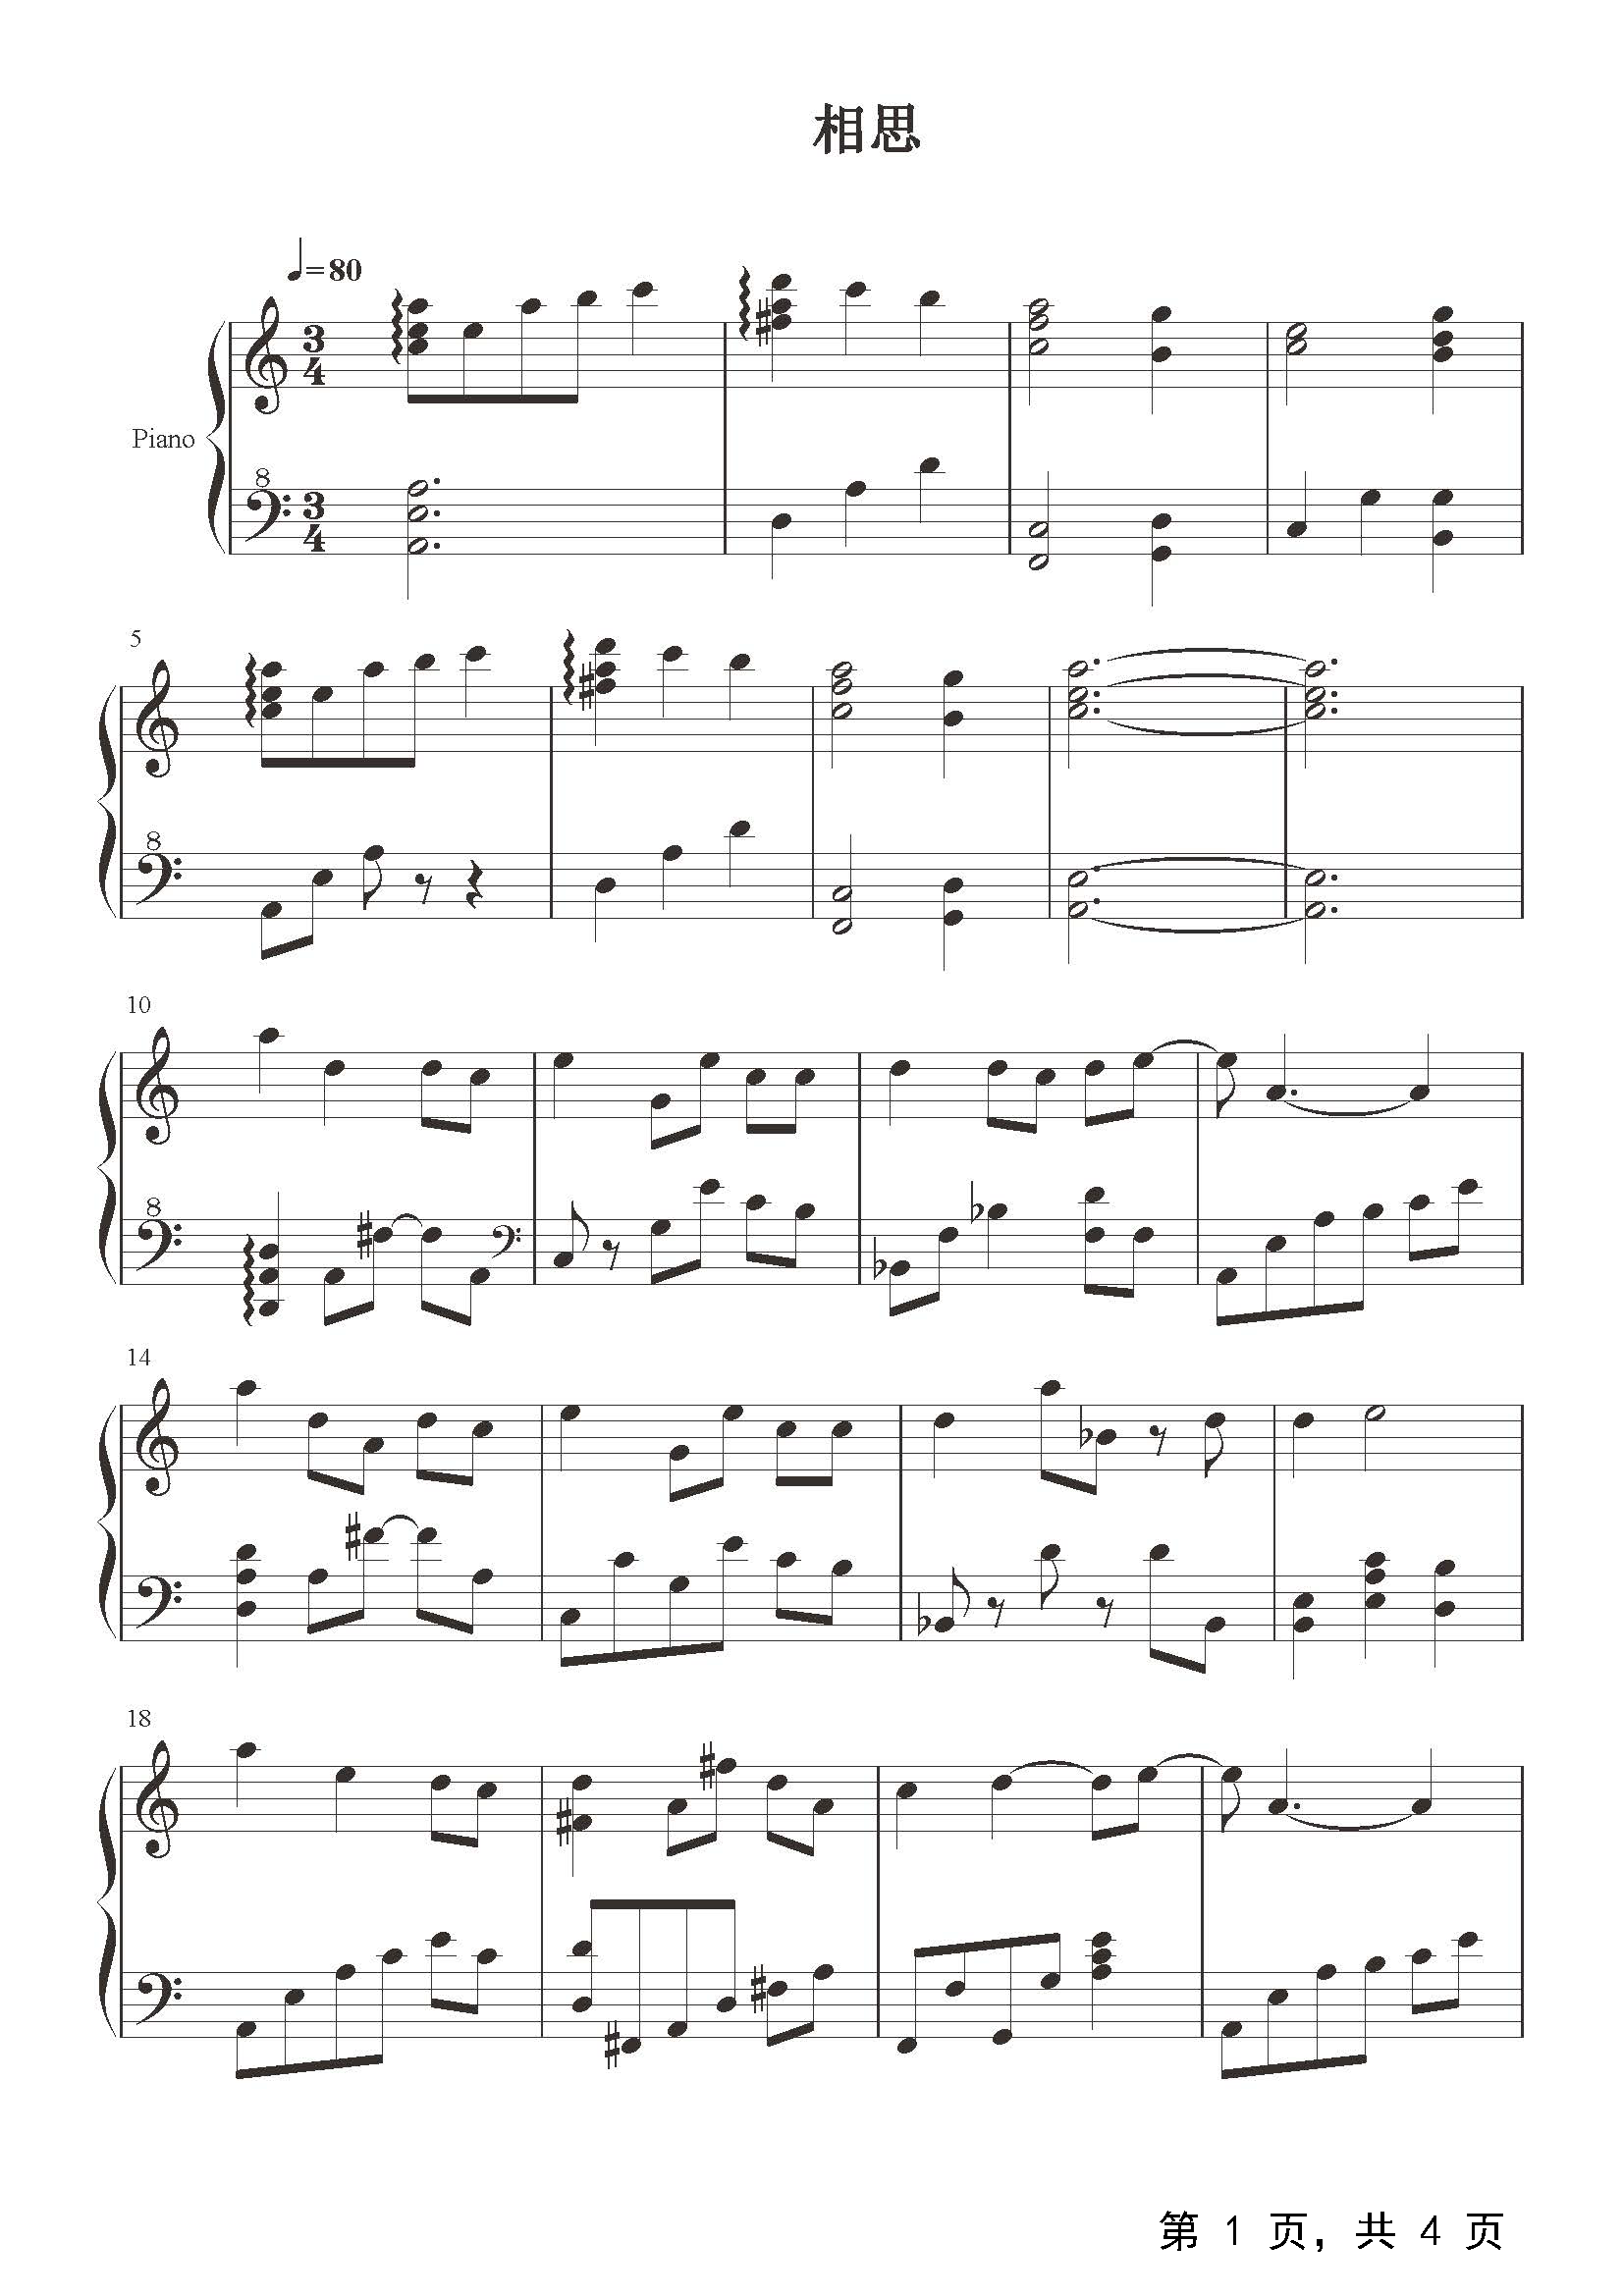 思念-毛阿敏五线谱预览1-钢琴谱文件（五线谱、双手简谱、数字谱、Midi、PDF）免费下载